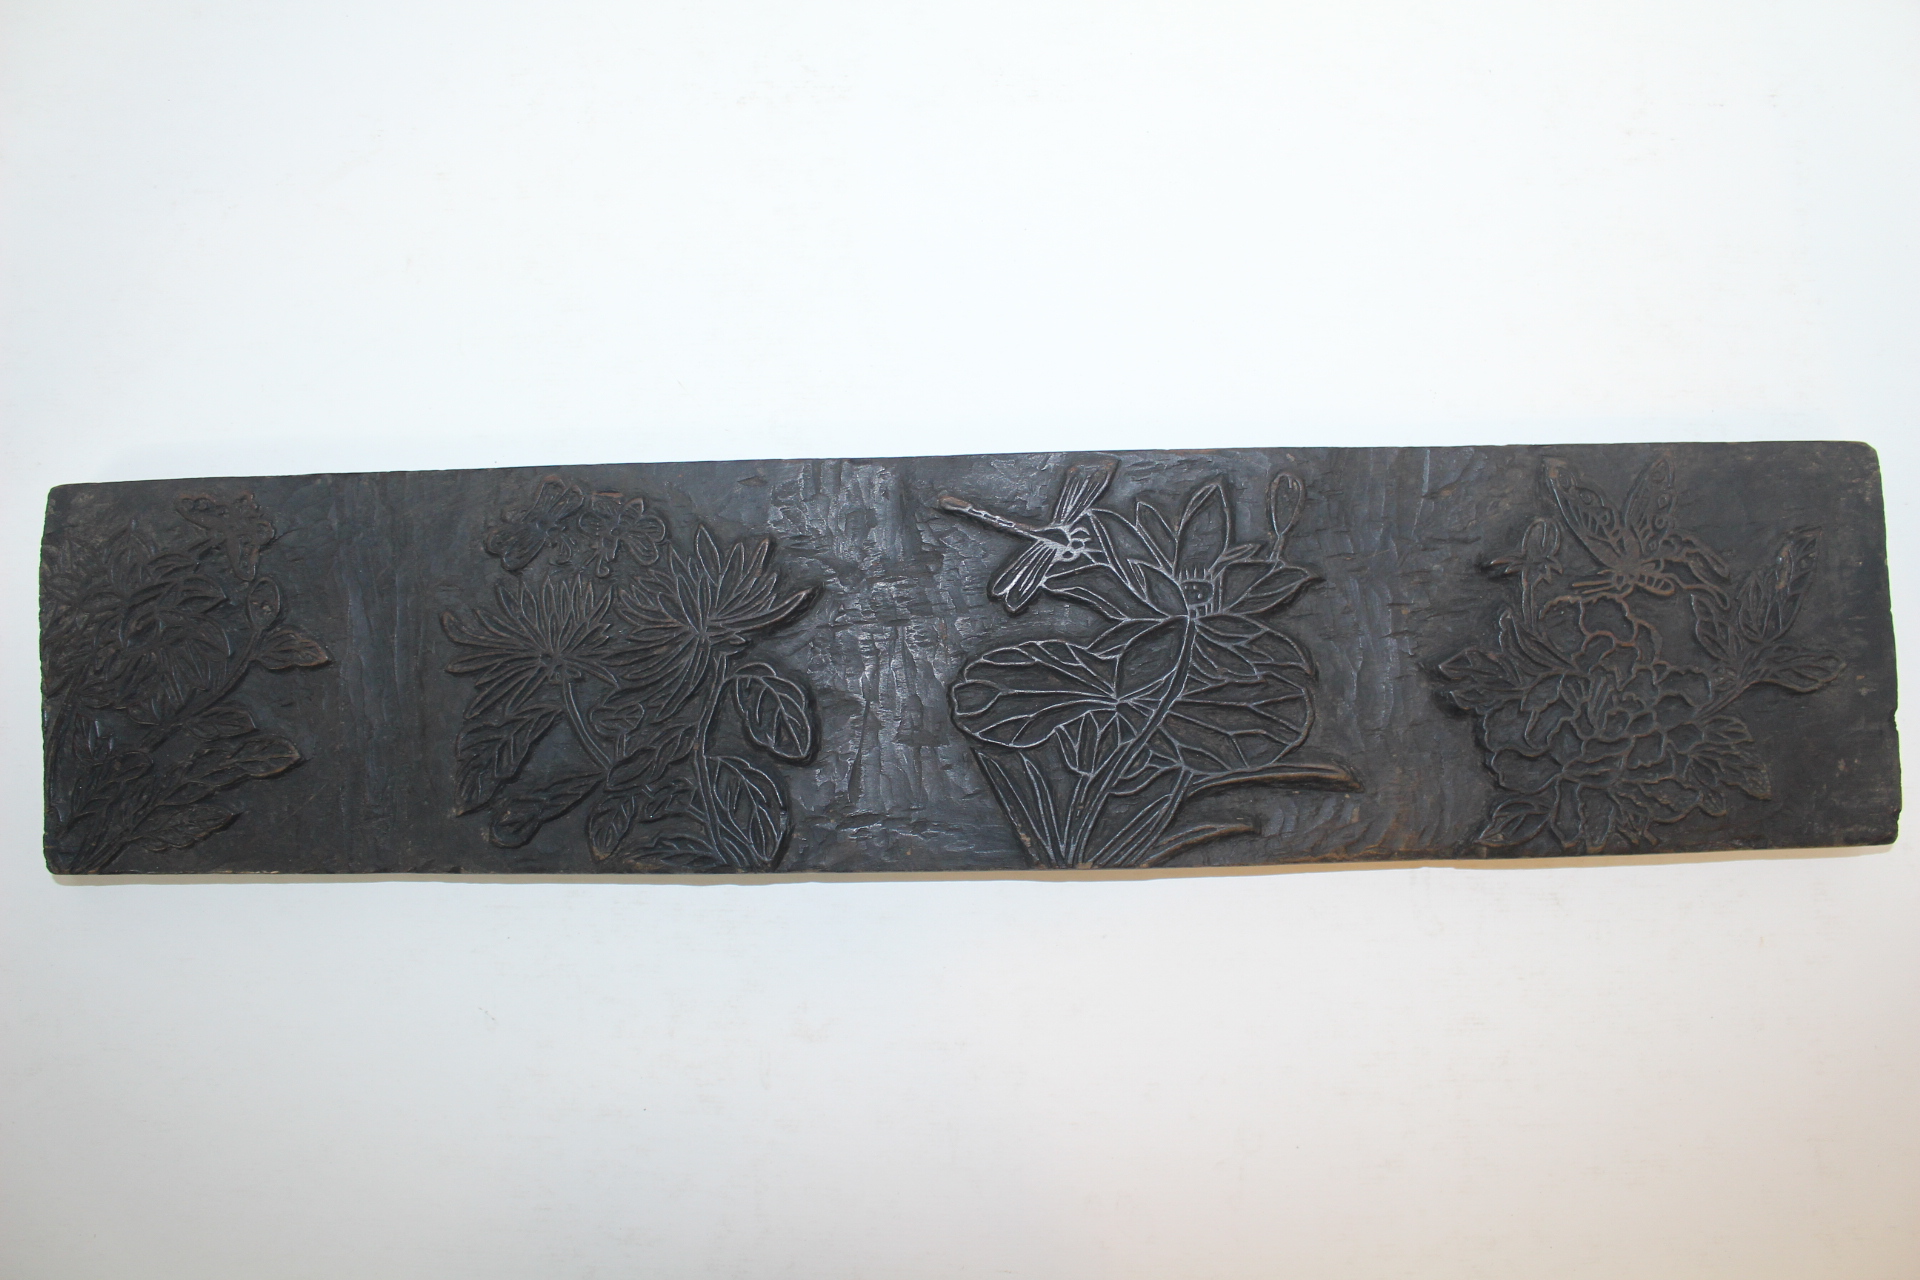 조선시대 나비,잠자리,화문이 조각된 시전지 목판